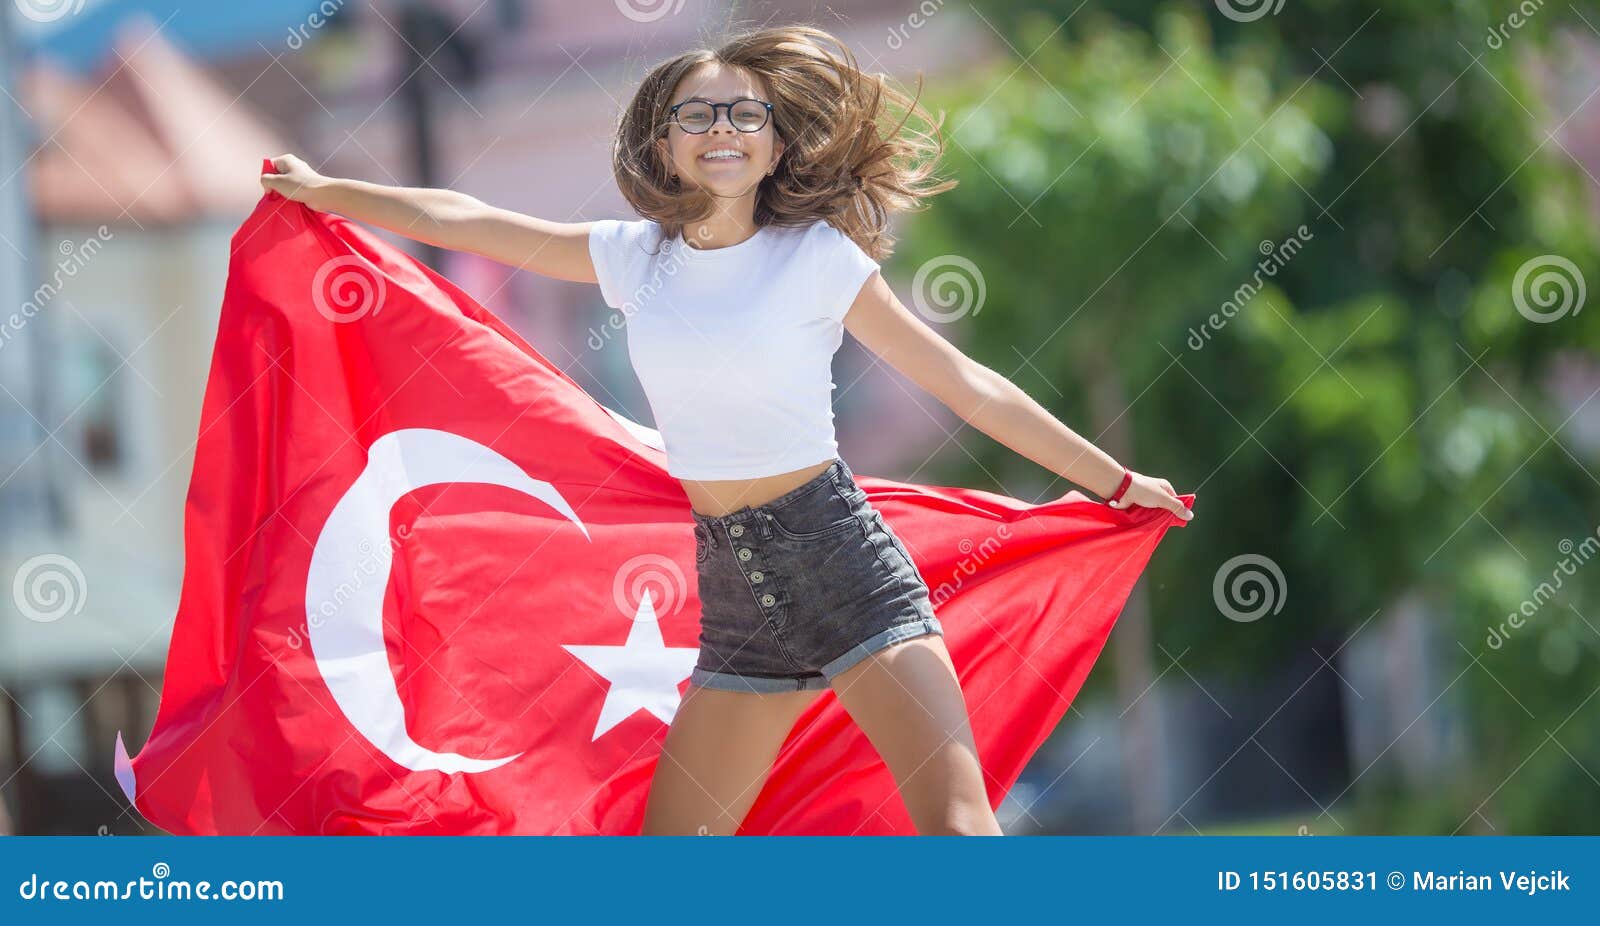 Turkish teen girl